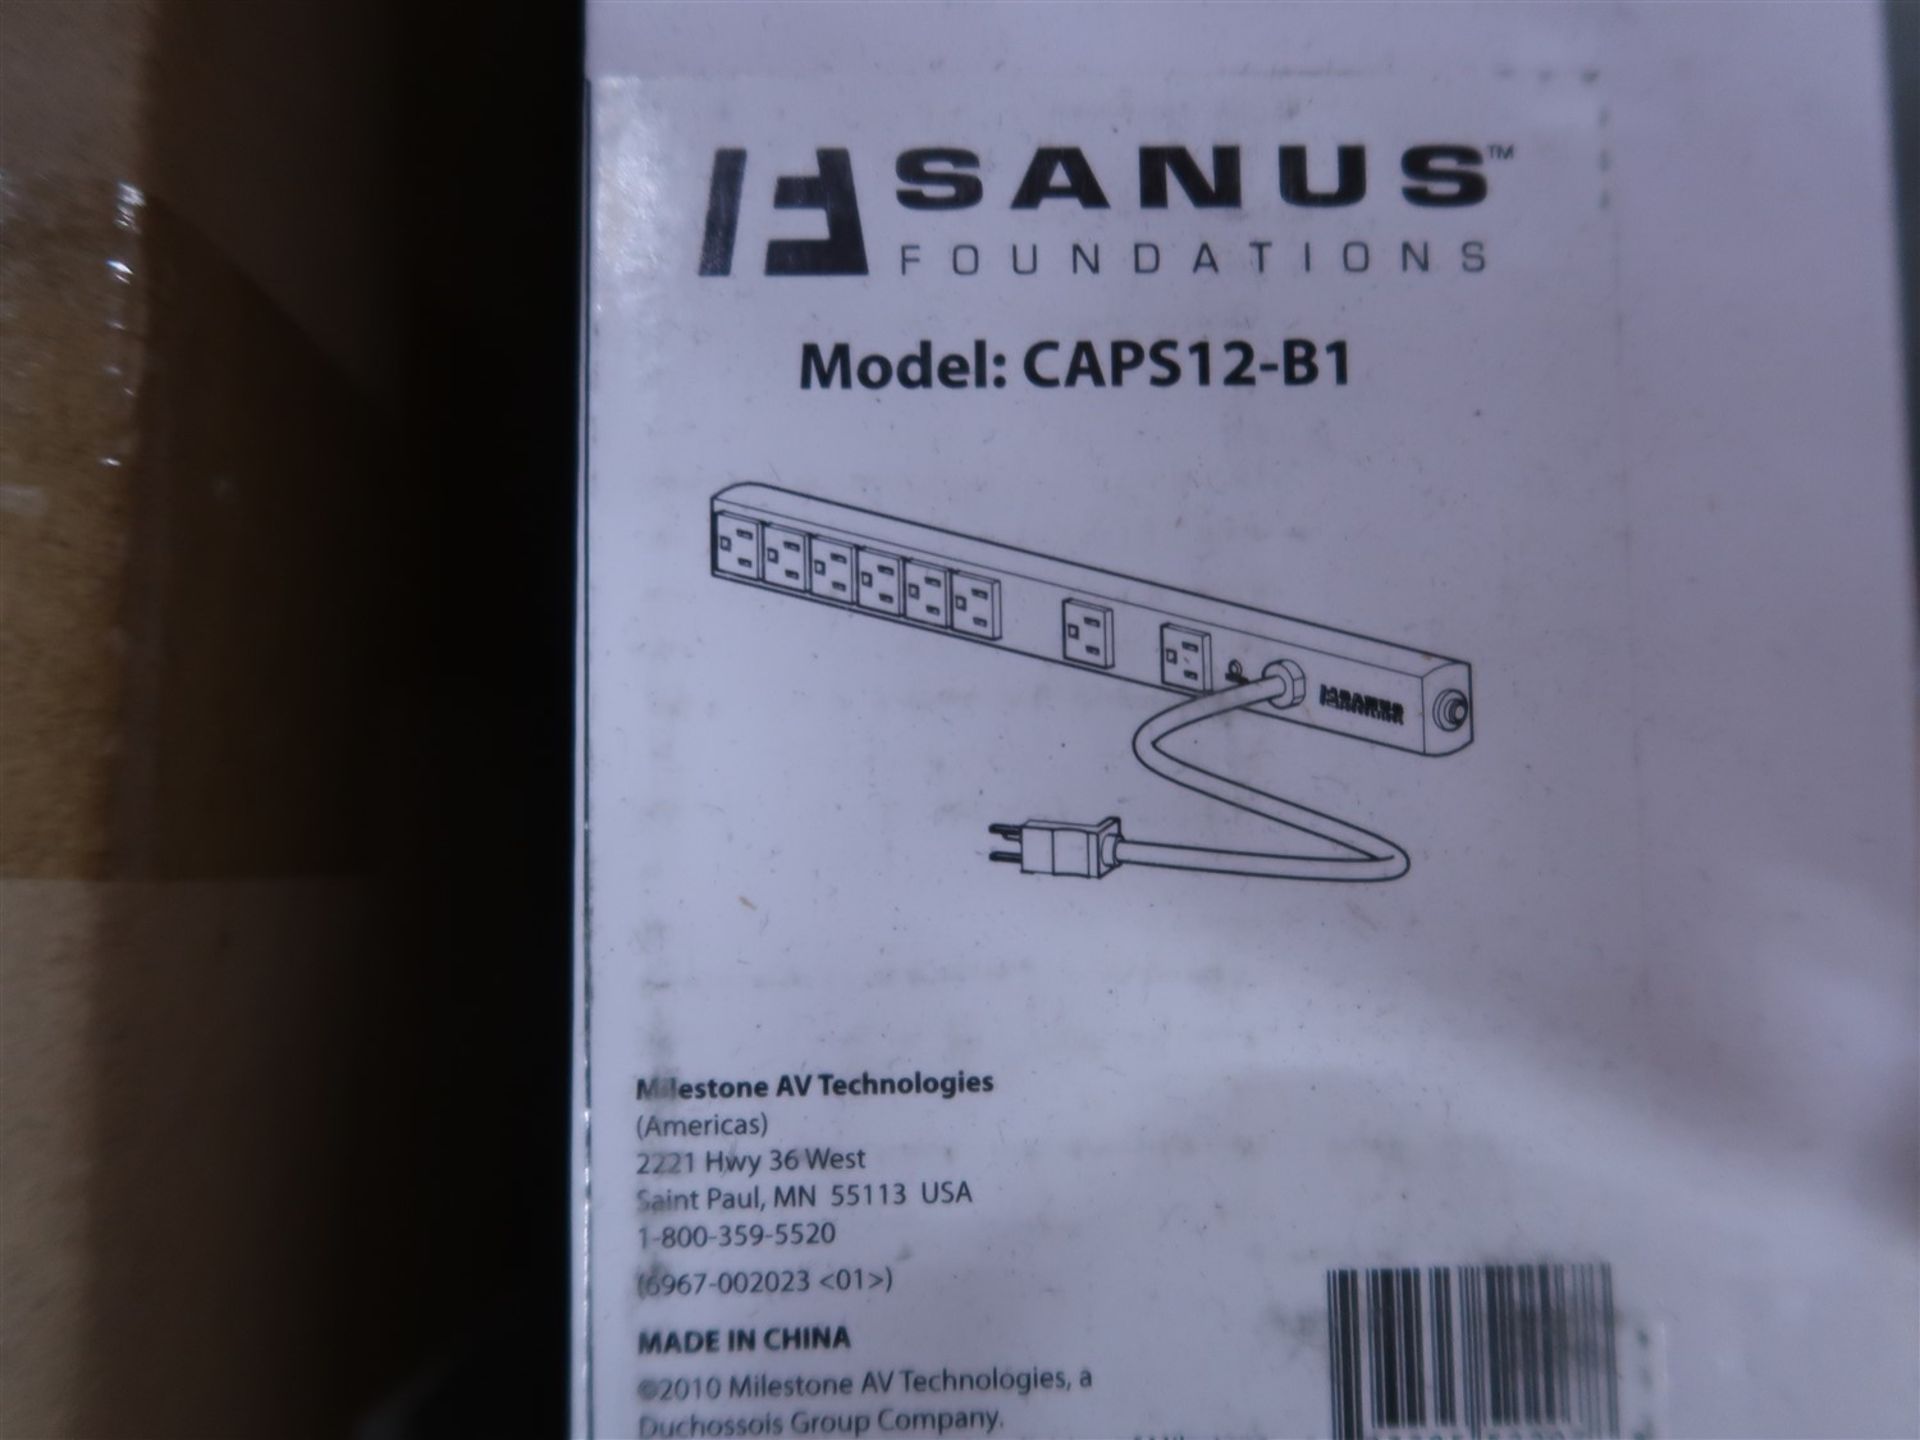 SANUS CAP527-B1 POWER BAR AND CAPS 12-B1 POWER BAR - Image 3 of 3